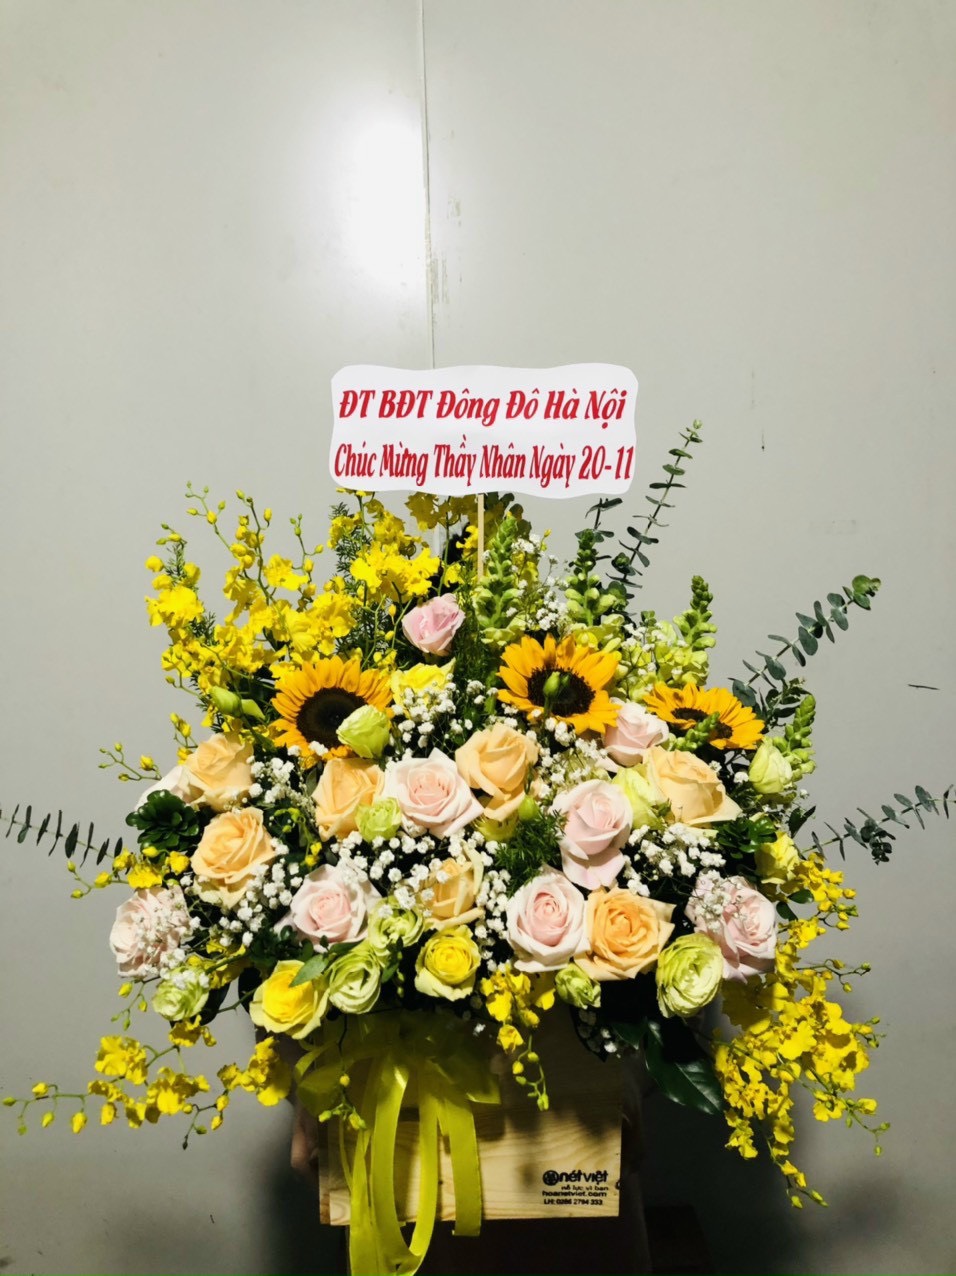 Lãng hoa đẹp tại shop hoa U Minh Thượng